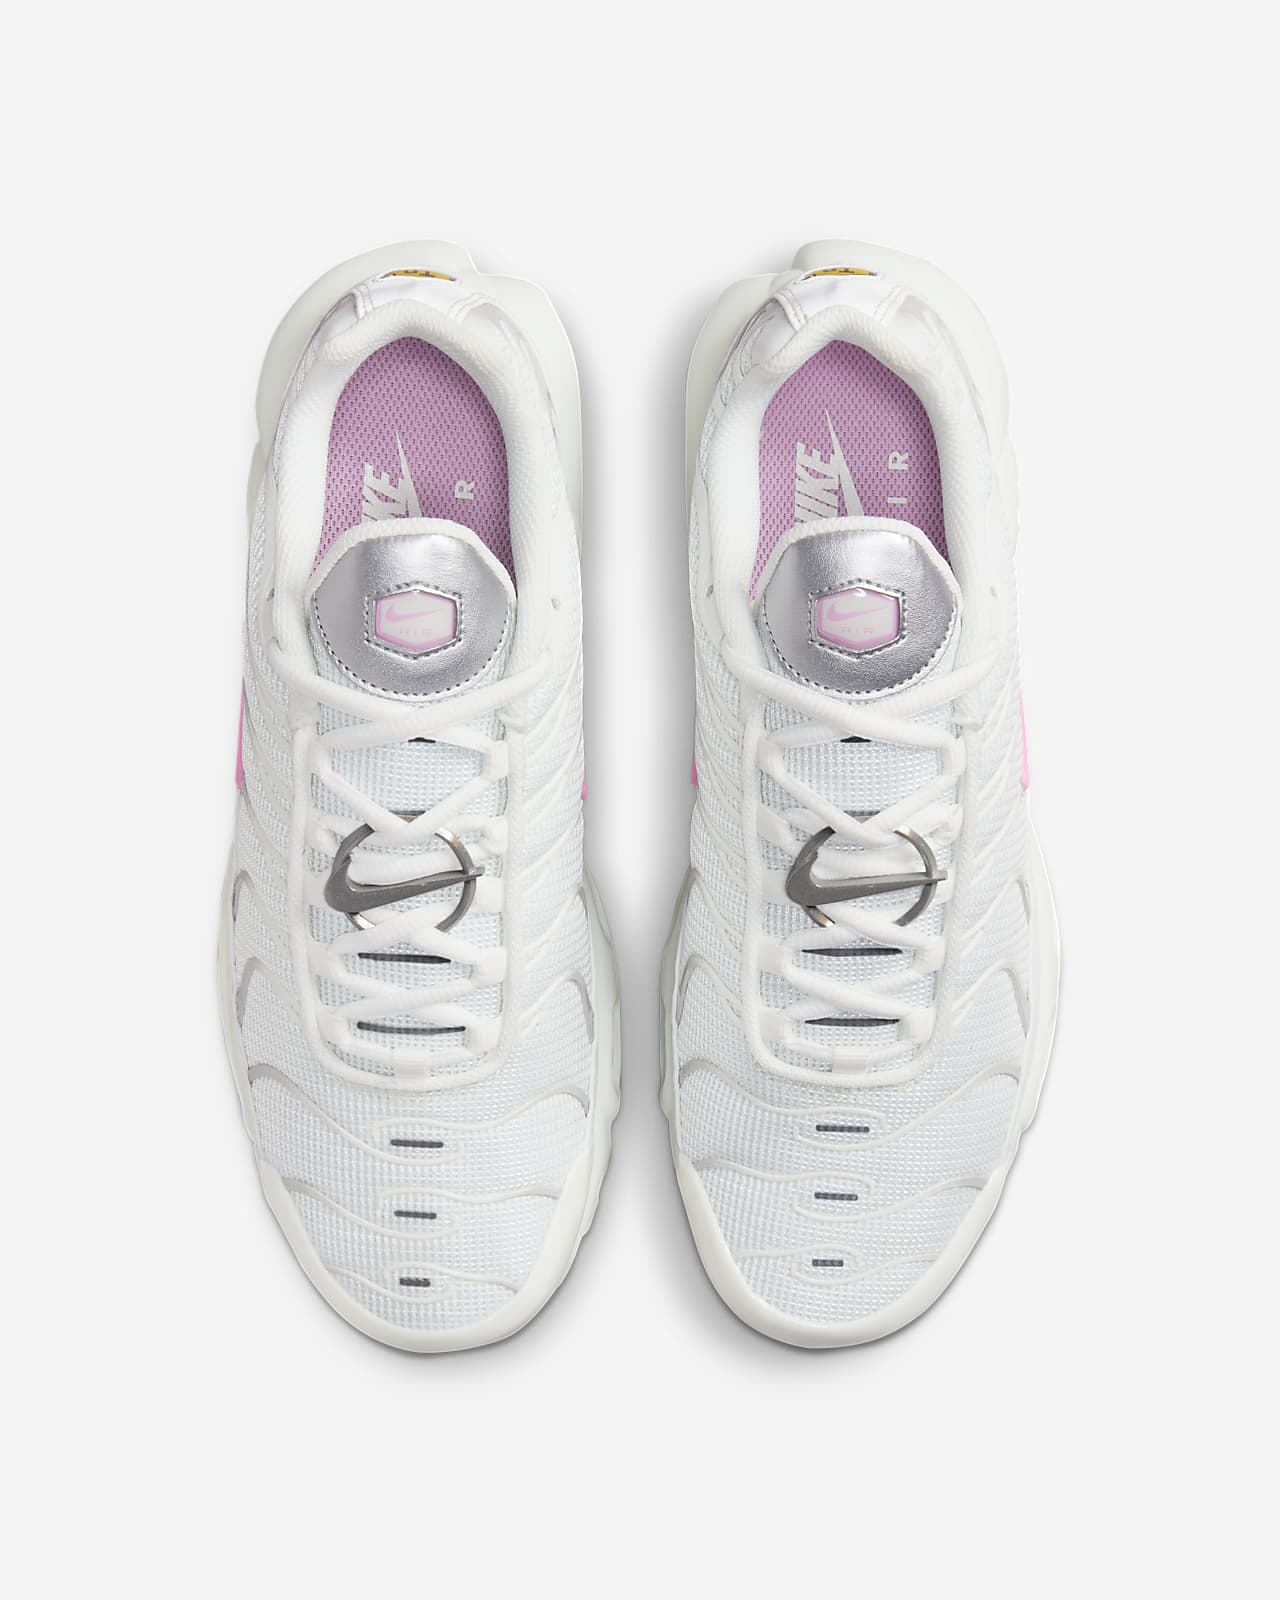 Chaussure Nike Air Max Plus pour Femme